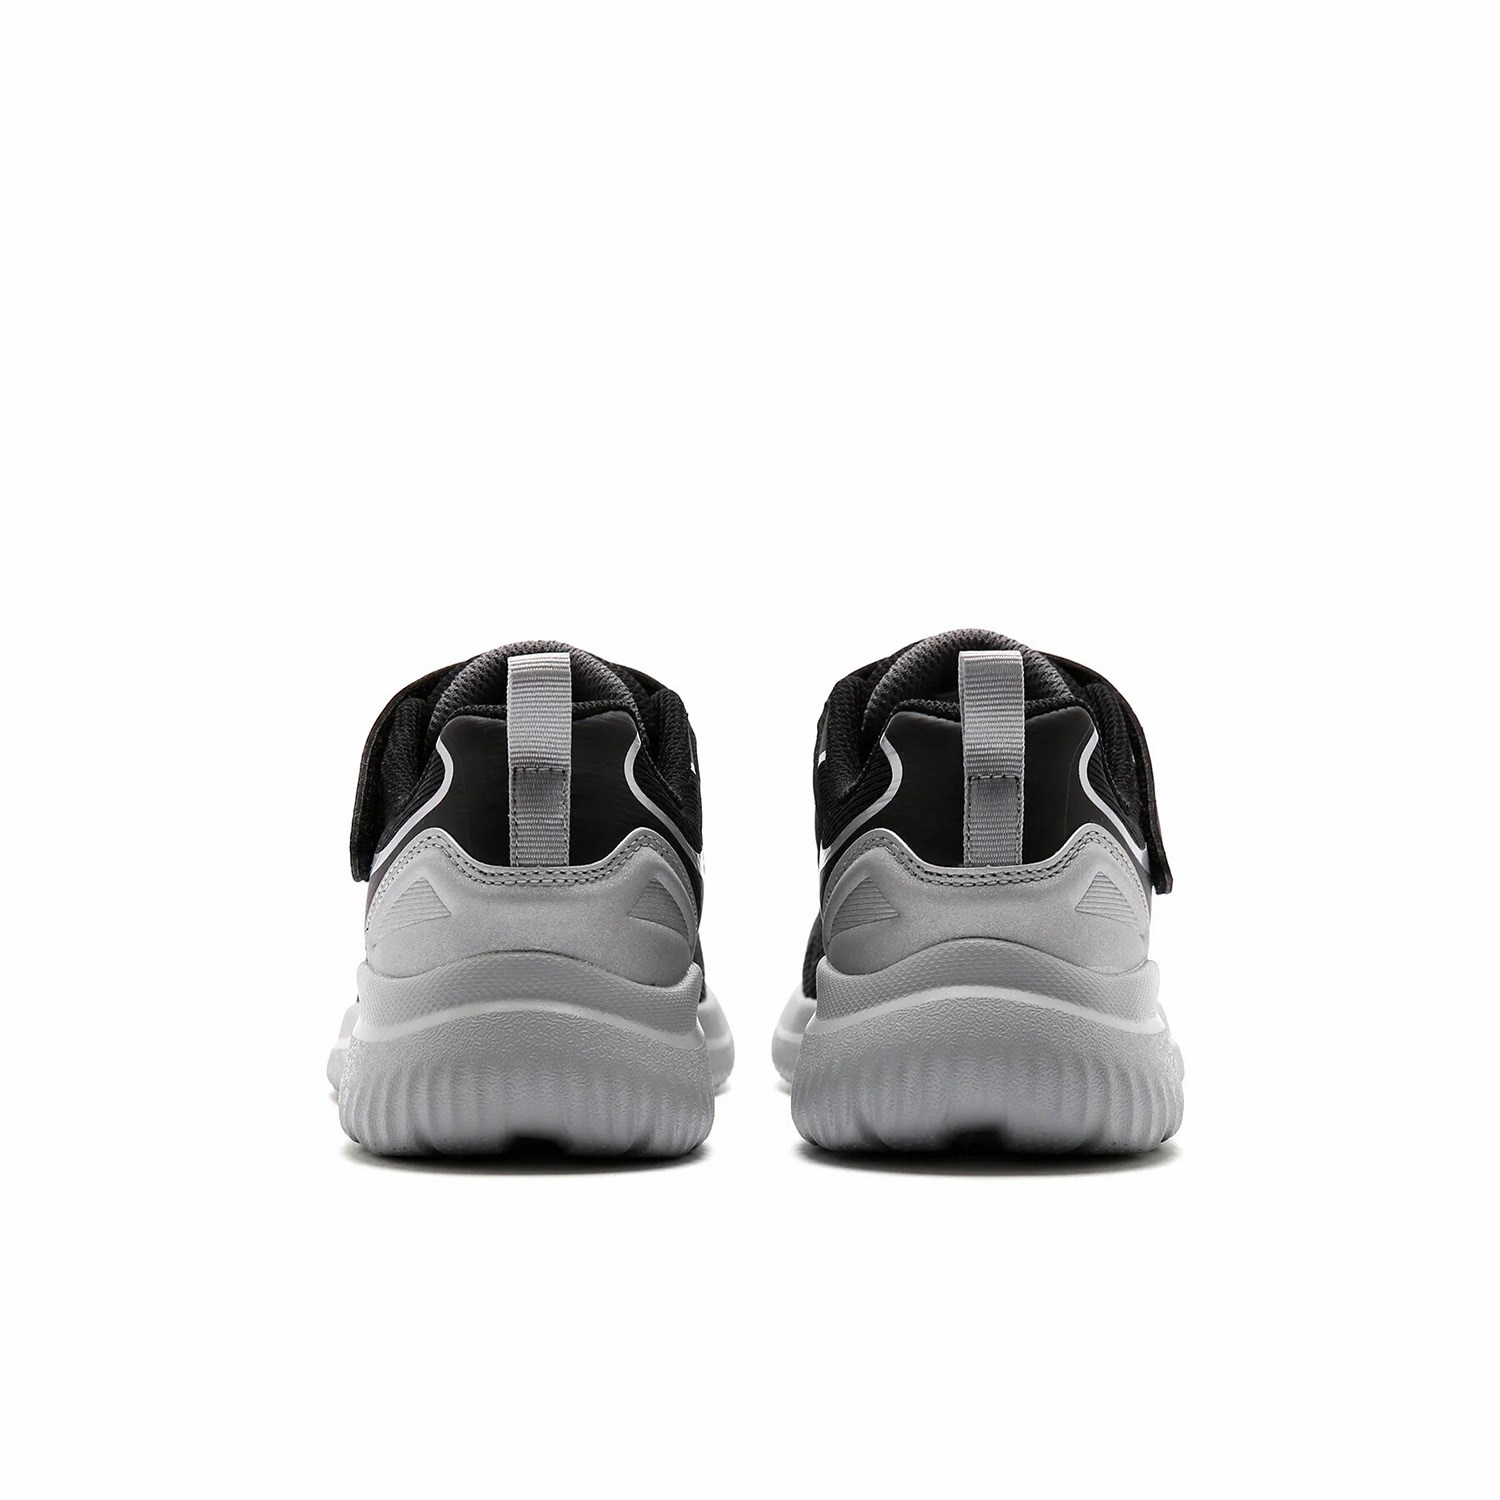 Skechers Bounder 2.0 Çocuk Günlük Spor Ayakkabısı Siyah - Gümüş